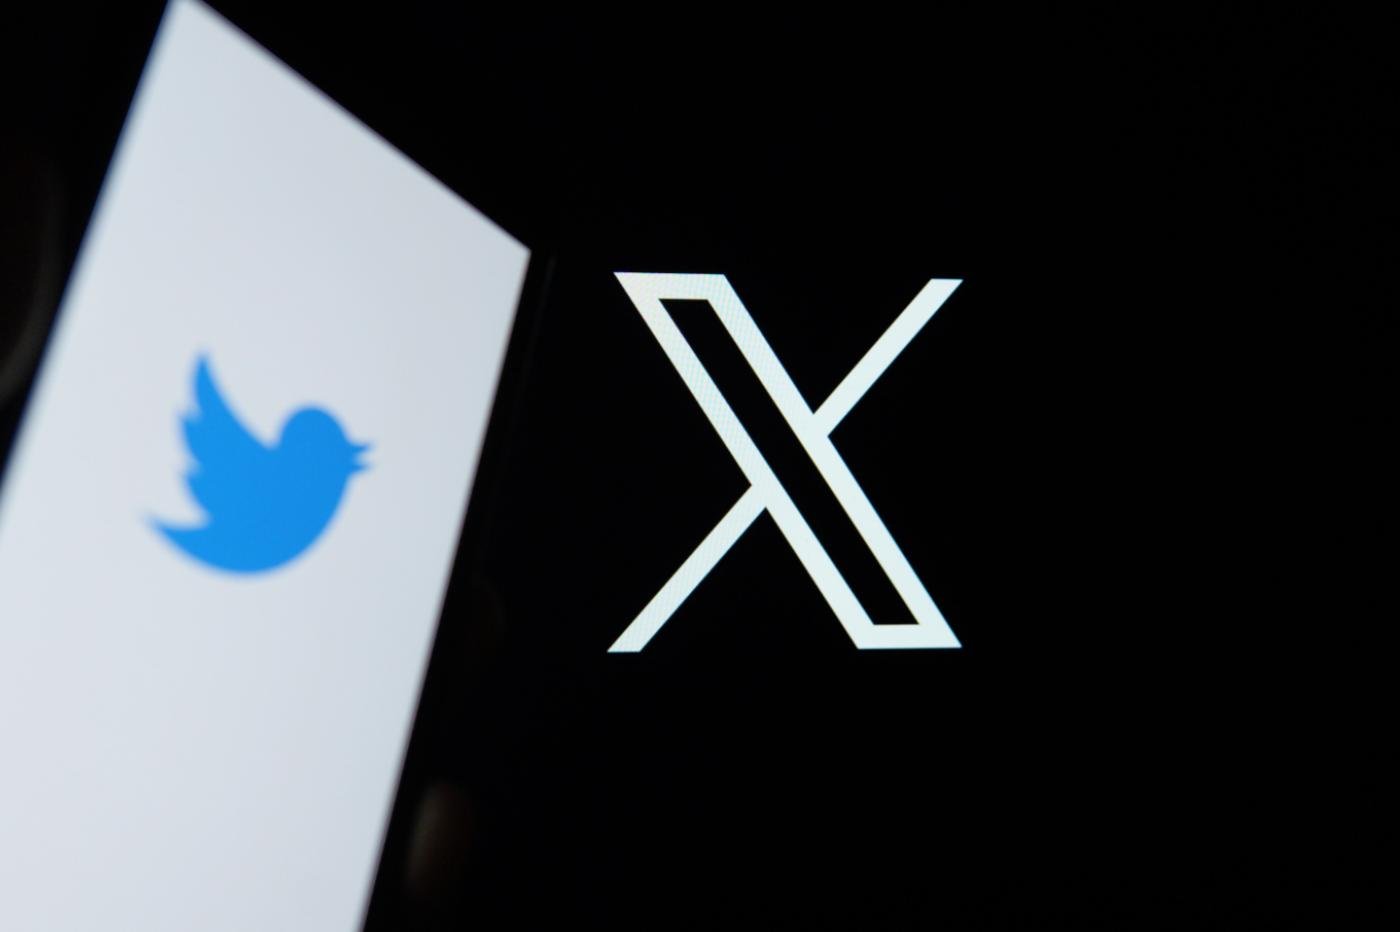 Le nouveau logo de Twitter, désormais baptisé X